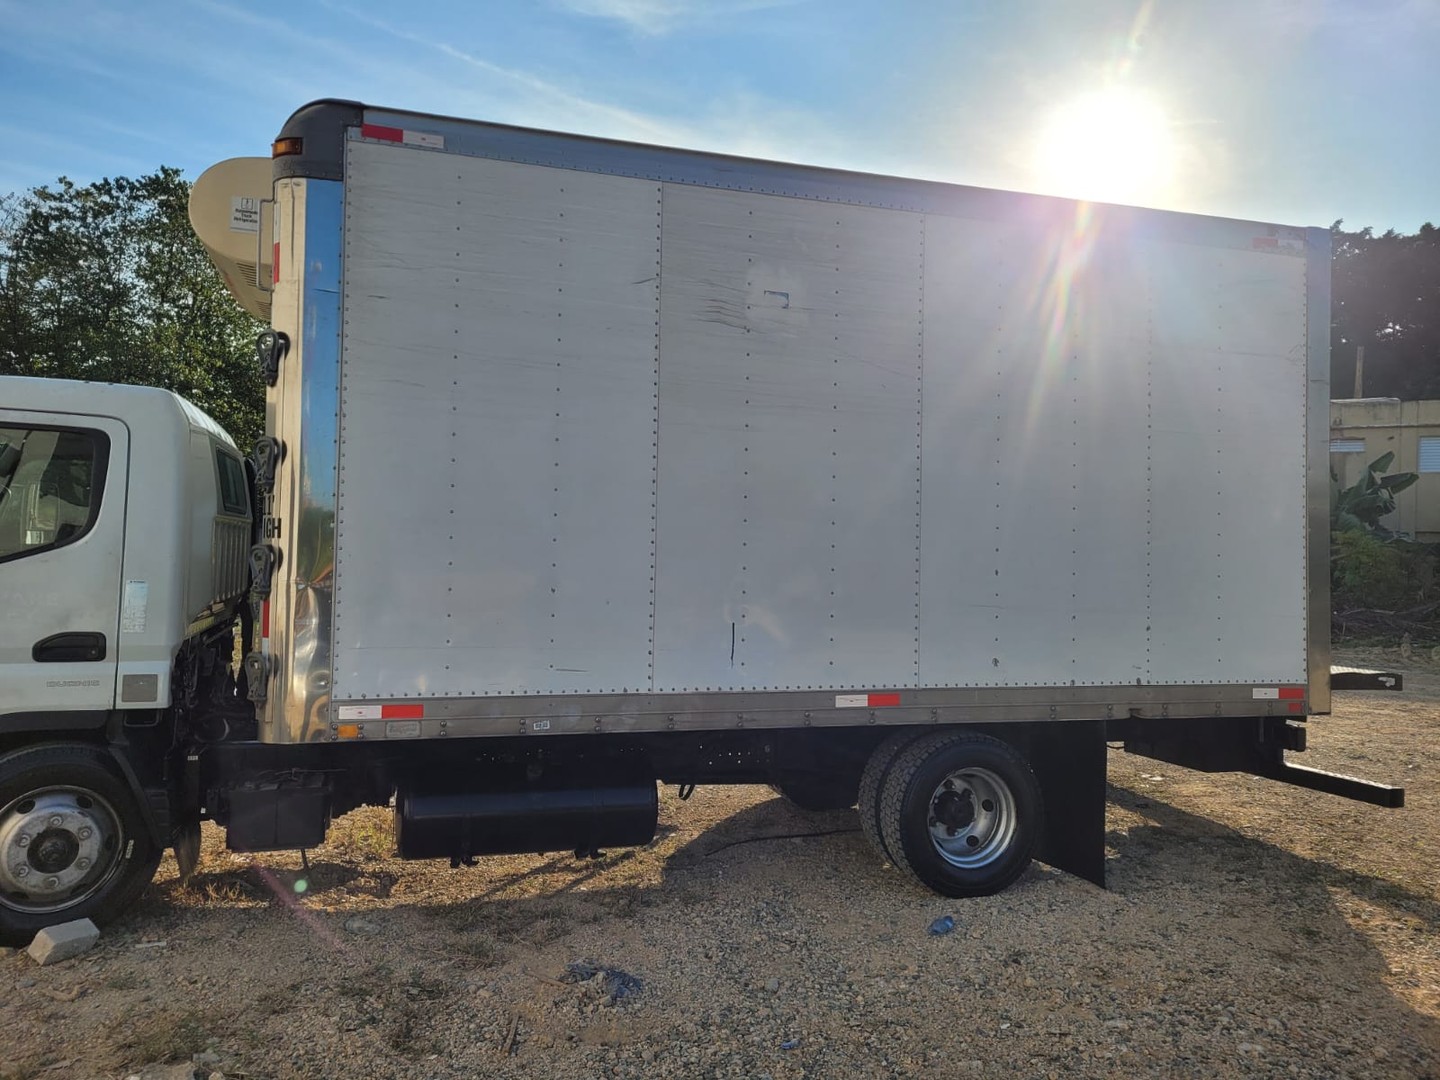 camiones y vehiculos pesados - Vendo traspaso de camion mitsubishi año 2014. $750,000 negociable. 4